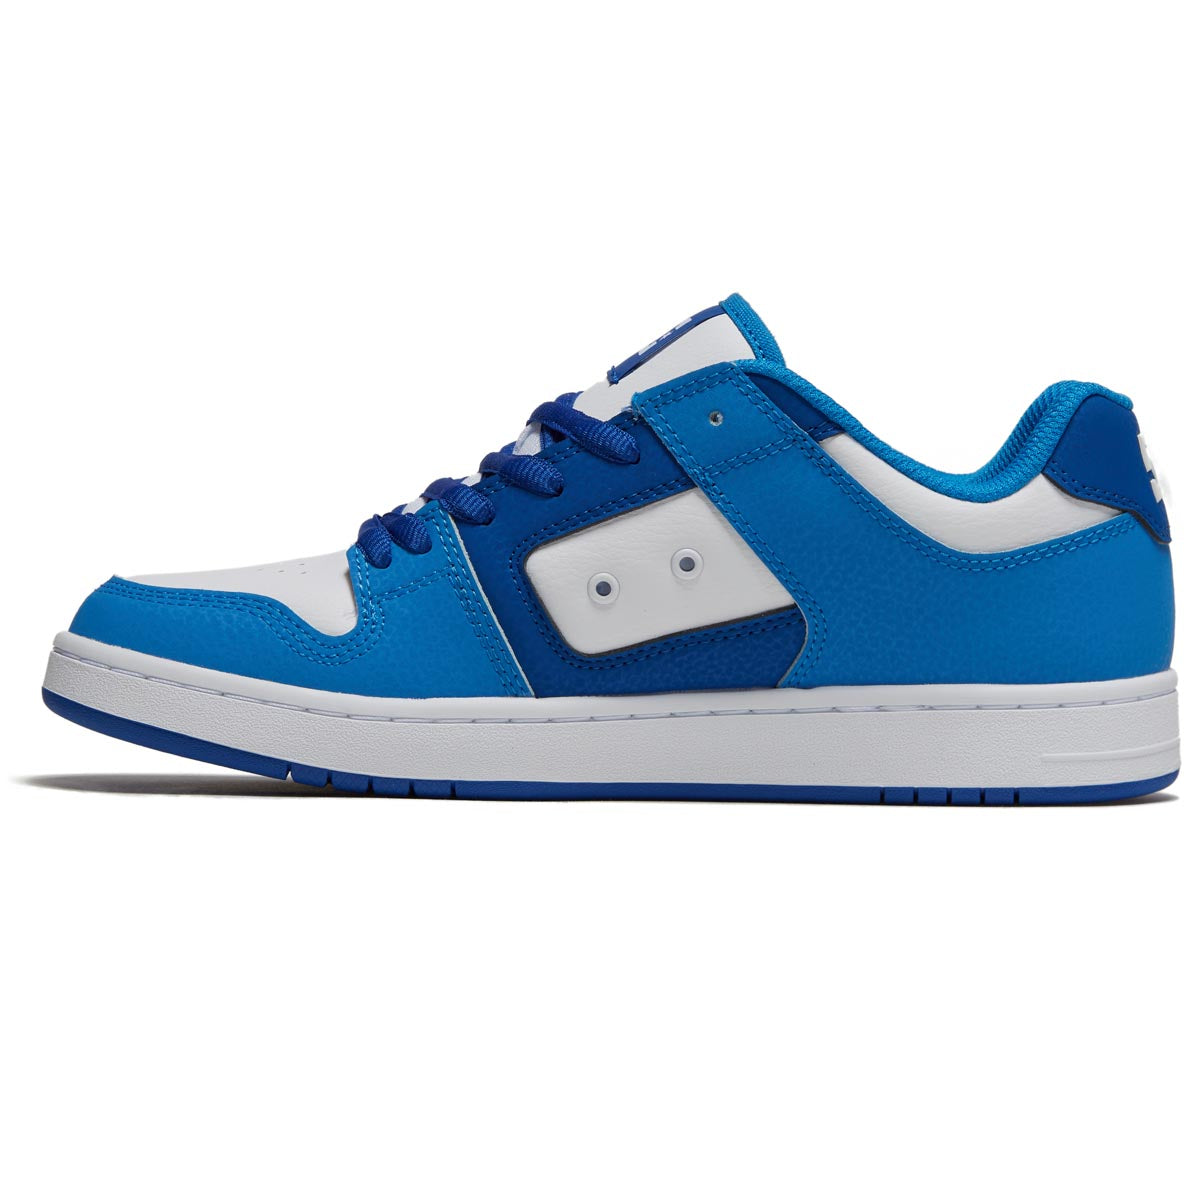 DC Manteca 4 Shoes - Blue/Blue/White image 2